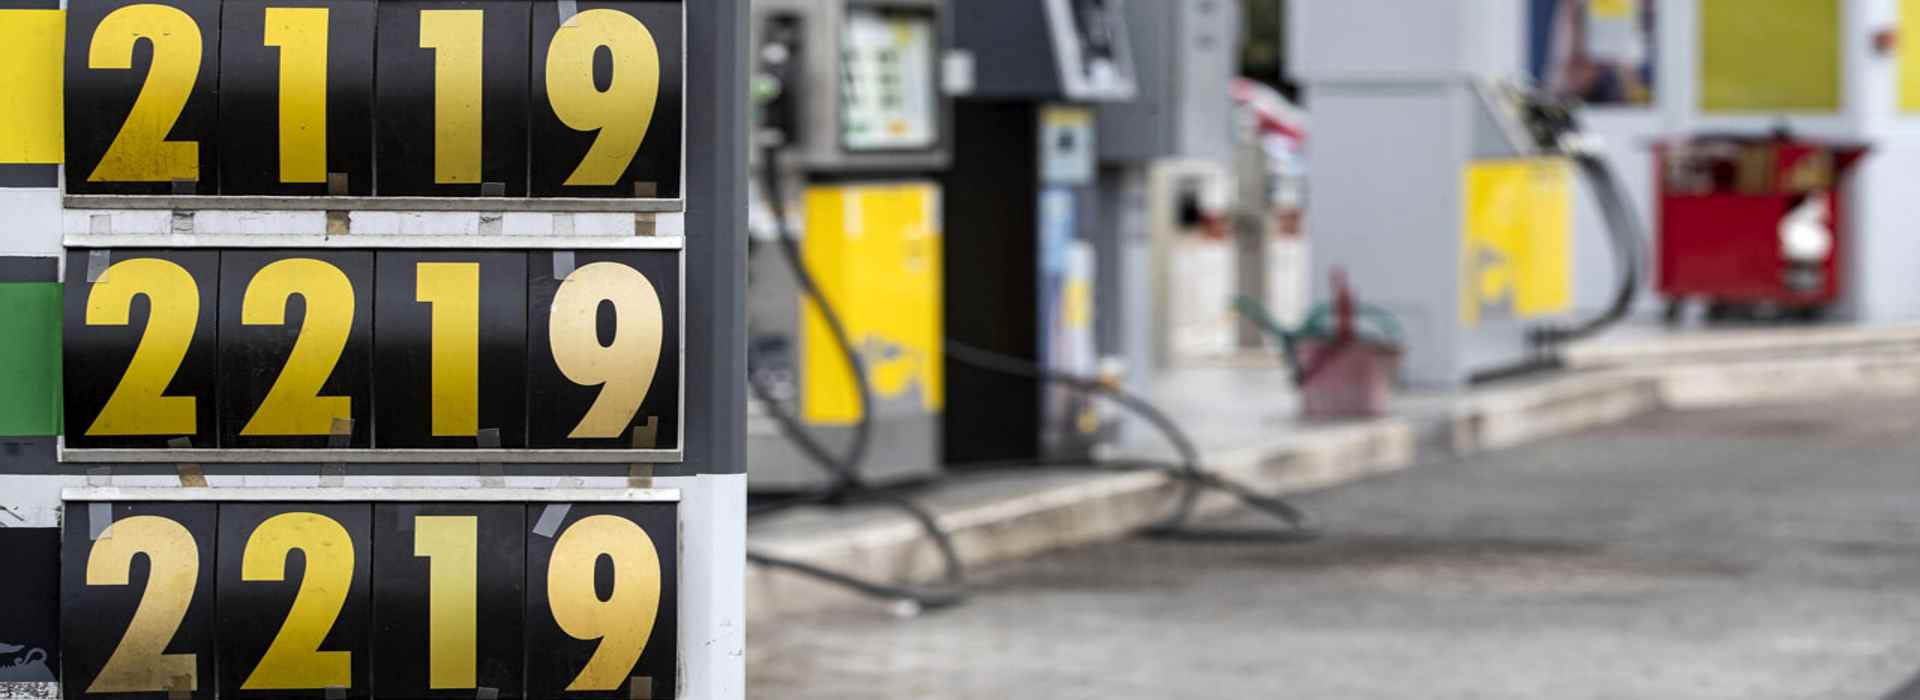 La Procura vuole fare chiarezza sulla questione dell'aumento del prezzo dei carburanti. Speculazione o reale necessità?